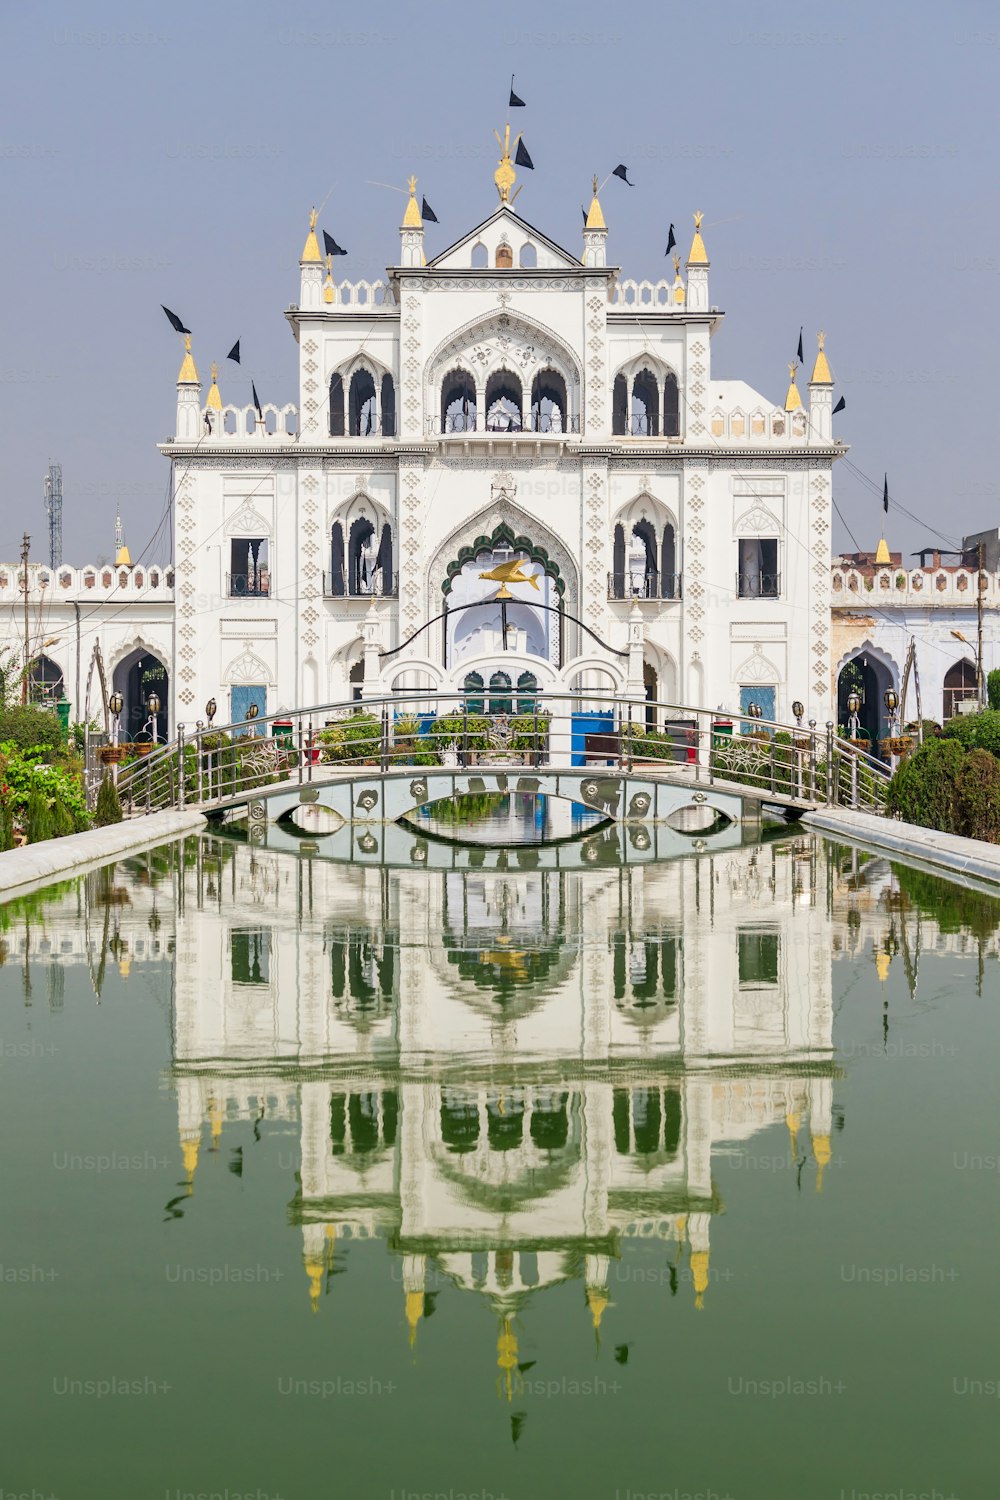 Chota Imambara, auch bekannt als Hussainabad Imambara, ist ein imposantes Monument in der Stadt Lucknow in Uttar Pradesh, Indien